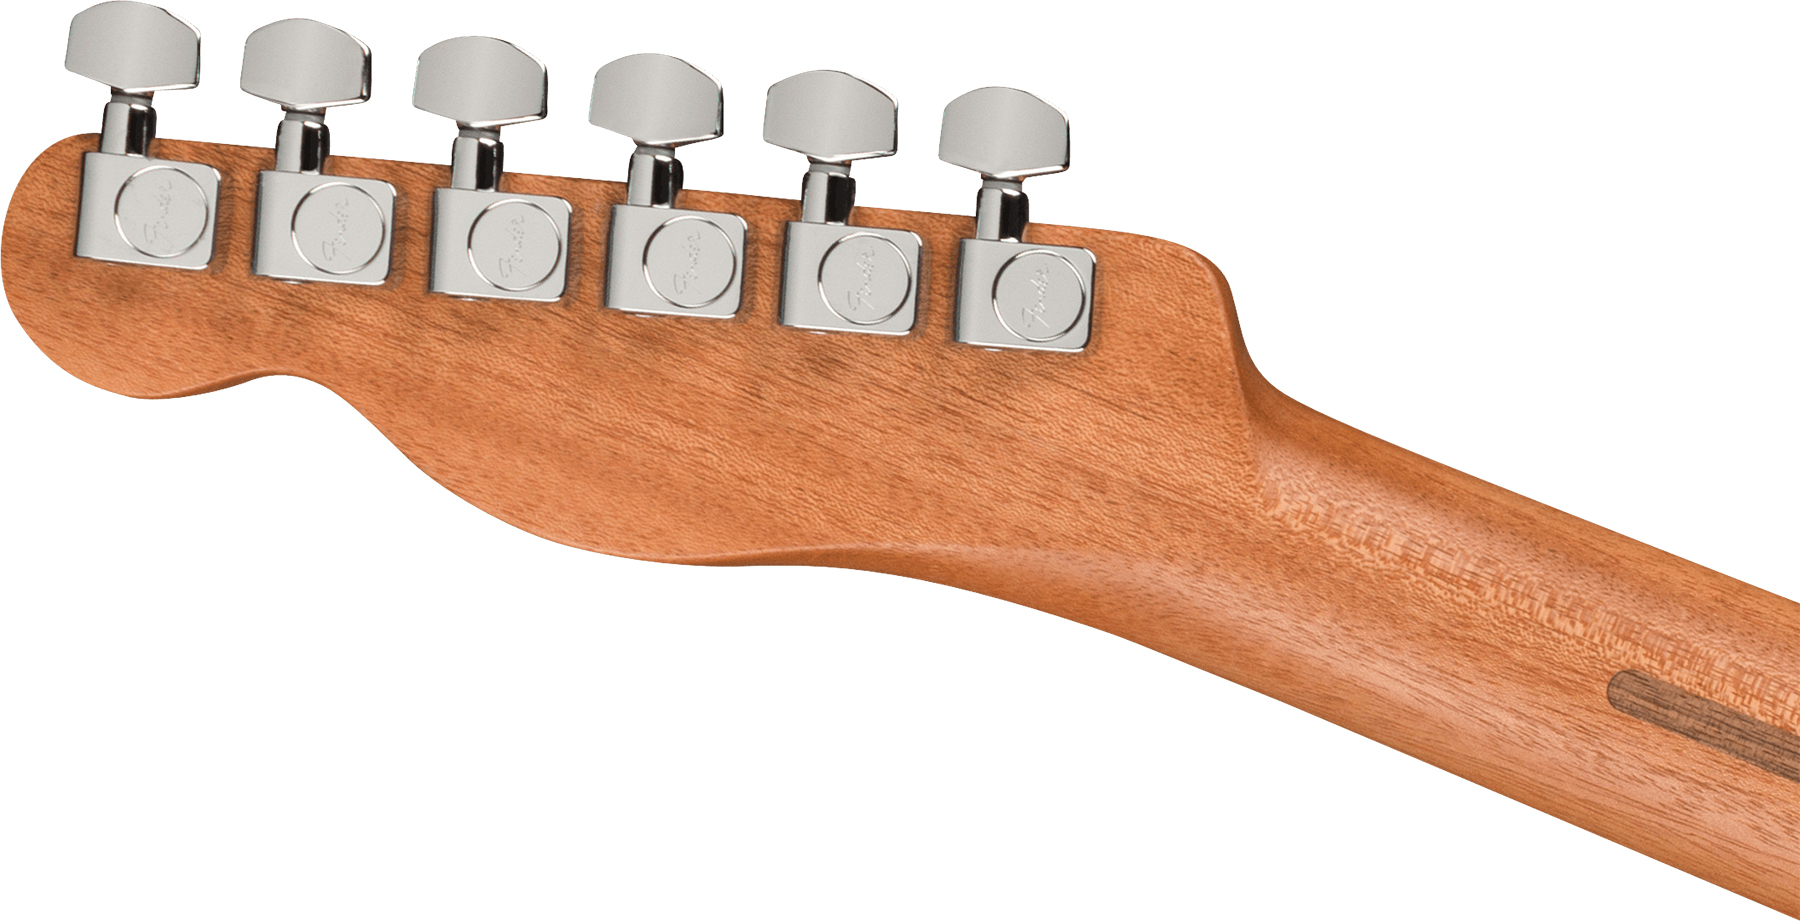 Fender Acoustasonic Tele Player Mex Epicea Acajou Rw - Shadow Burst - Guitare Electro Acoustique - Variation 3